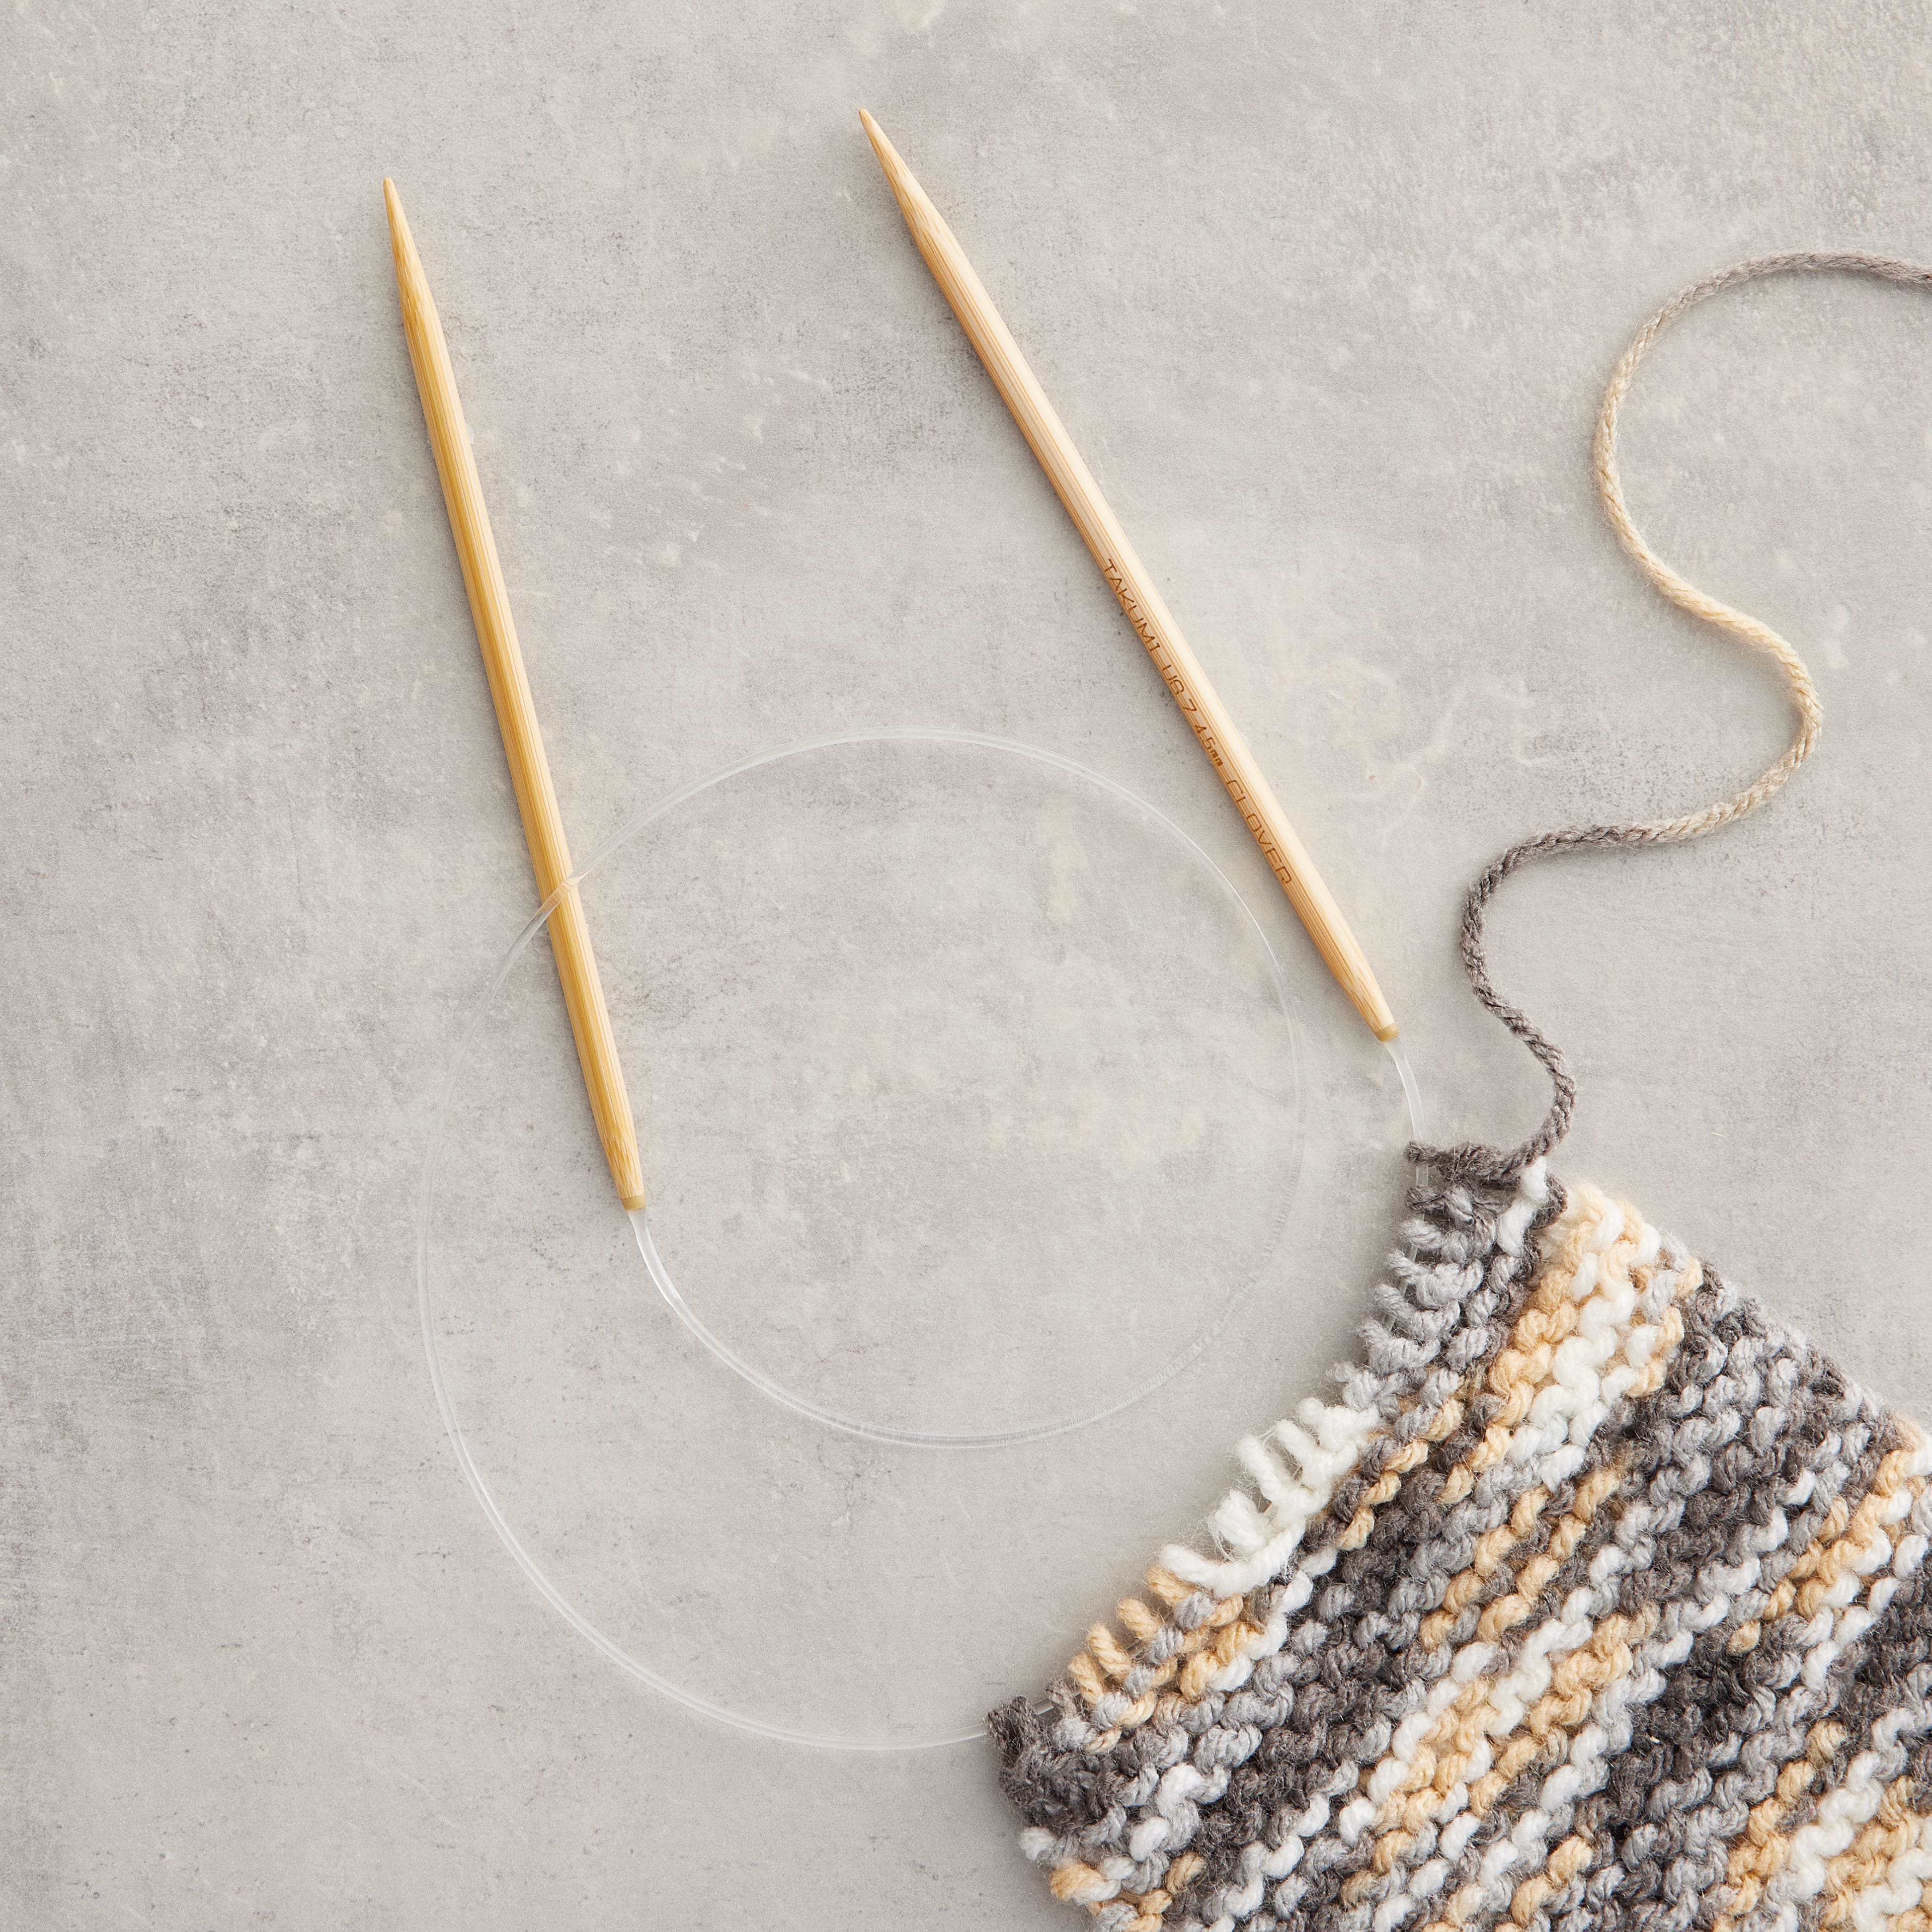 Clover Knitting Needles & Crochet